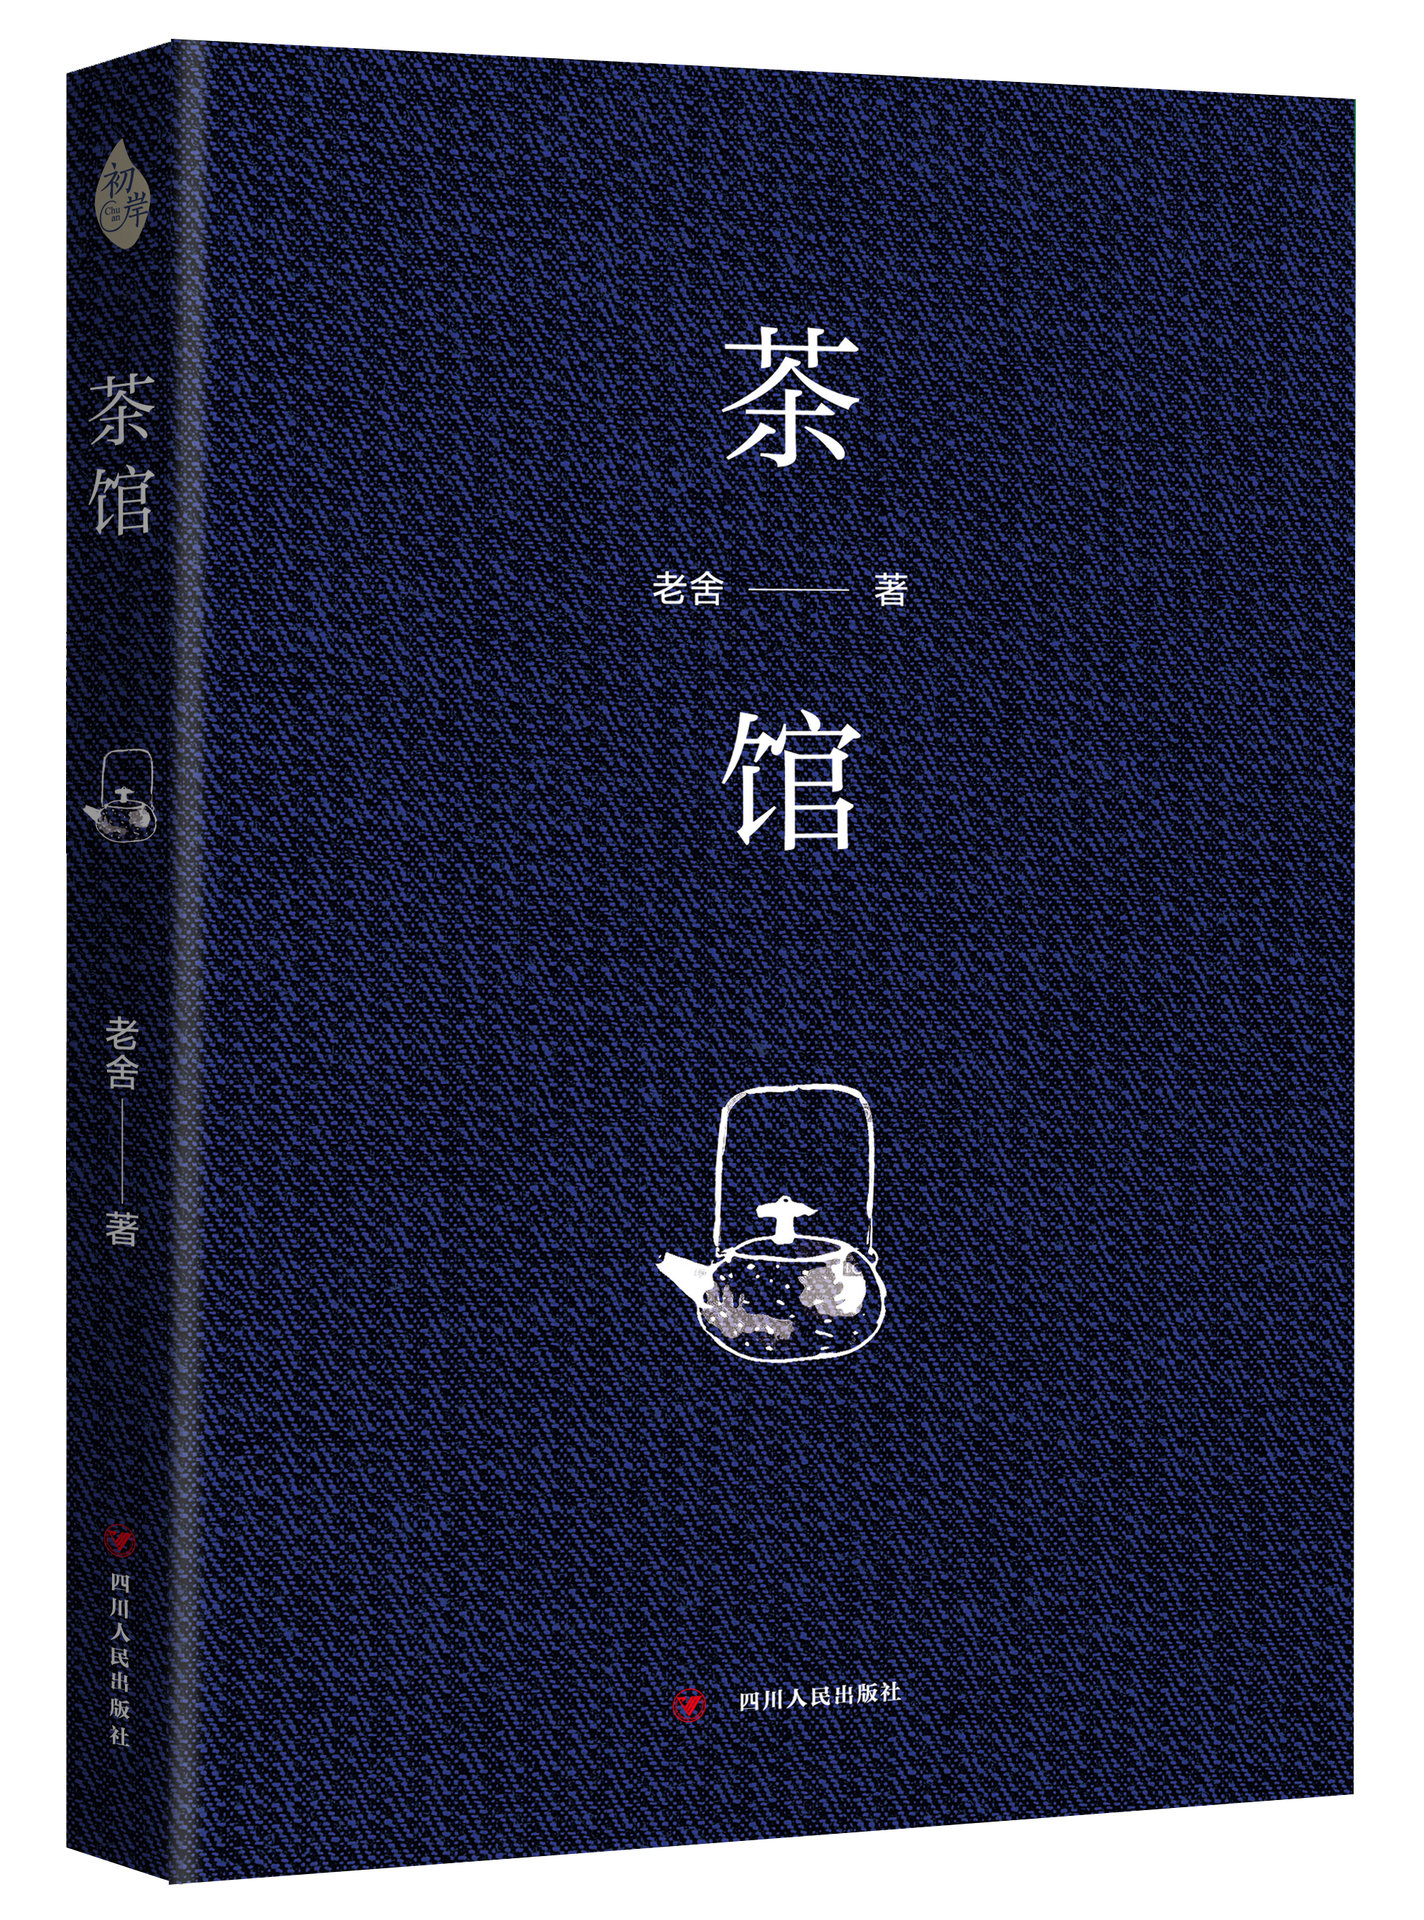 《茶館》(四川人民出版社出版圖書)